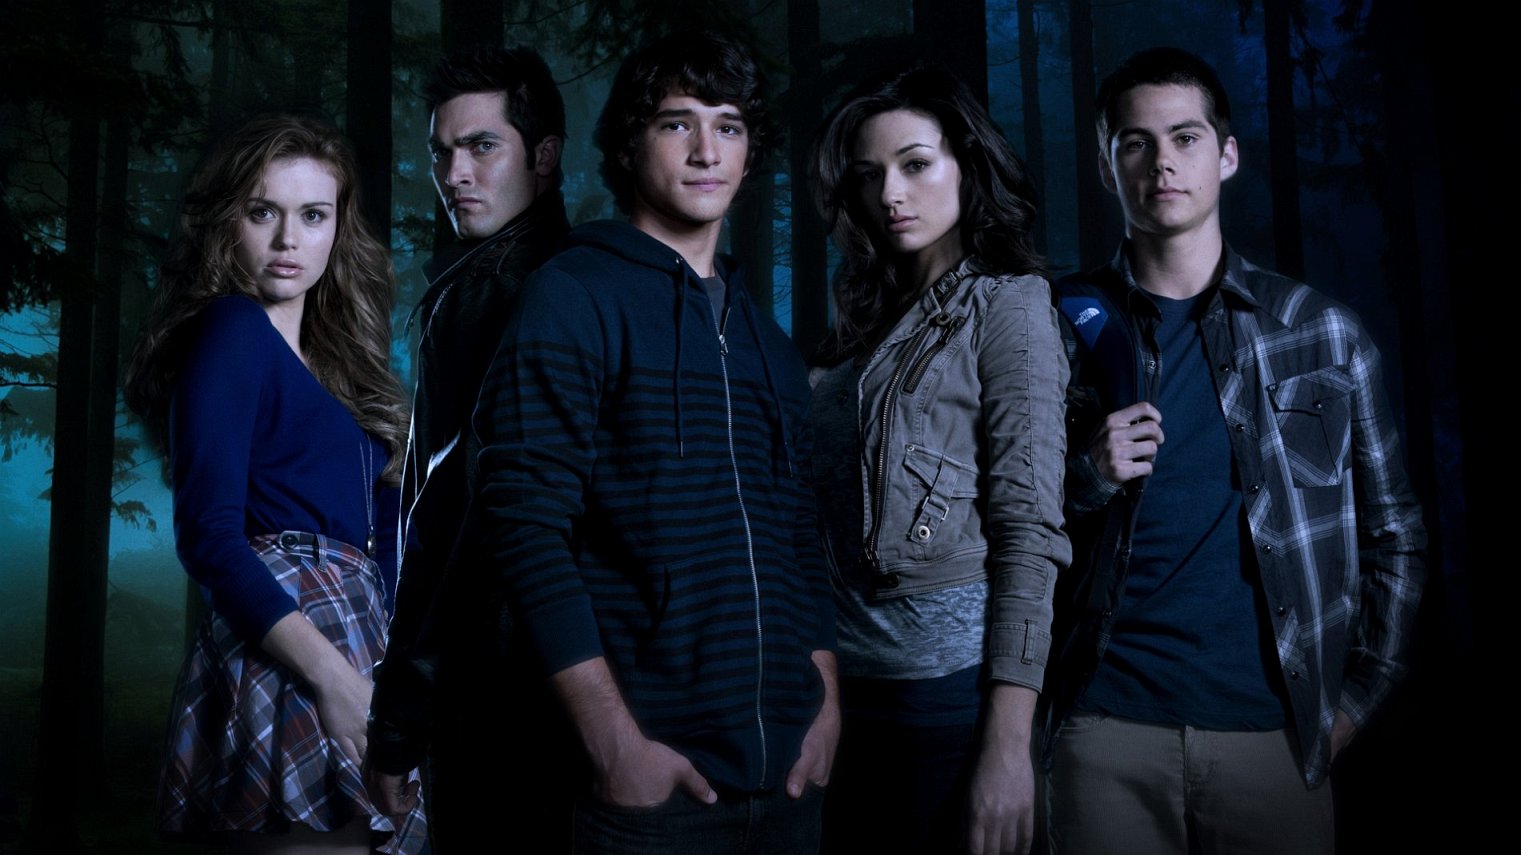 cast of Teen Wolf season 6